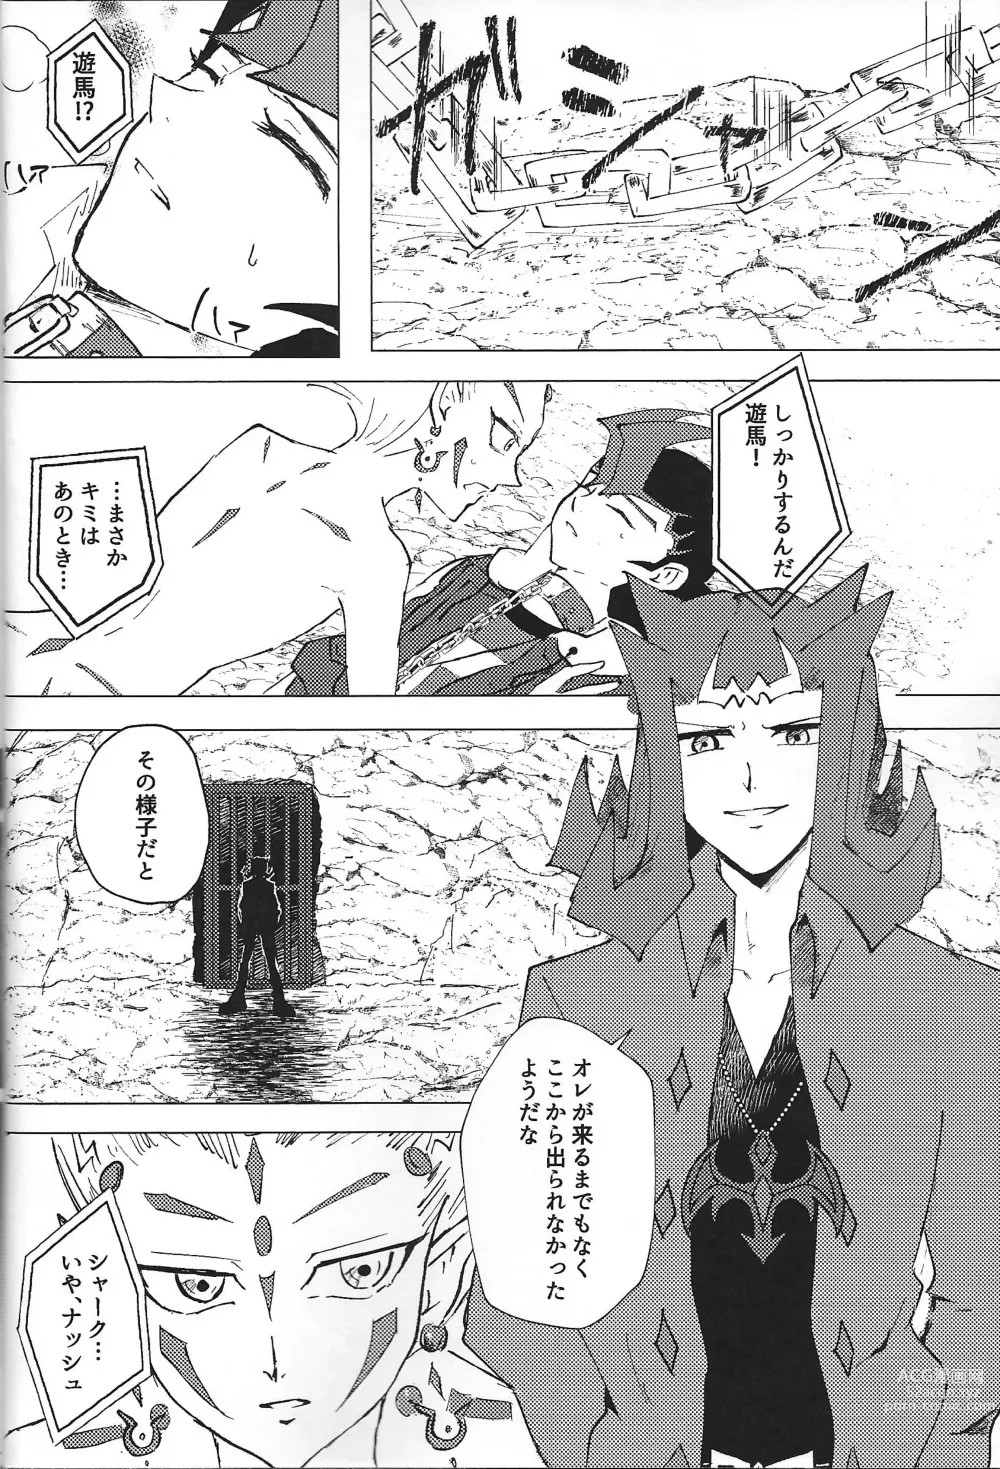 Page 26 of doujinshi ChaosPhantasma